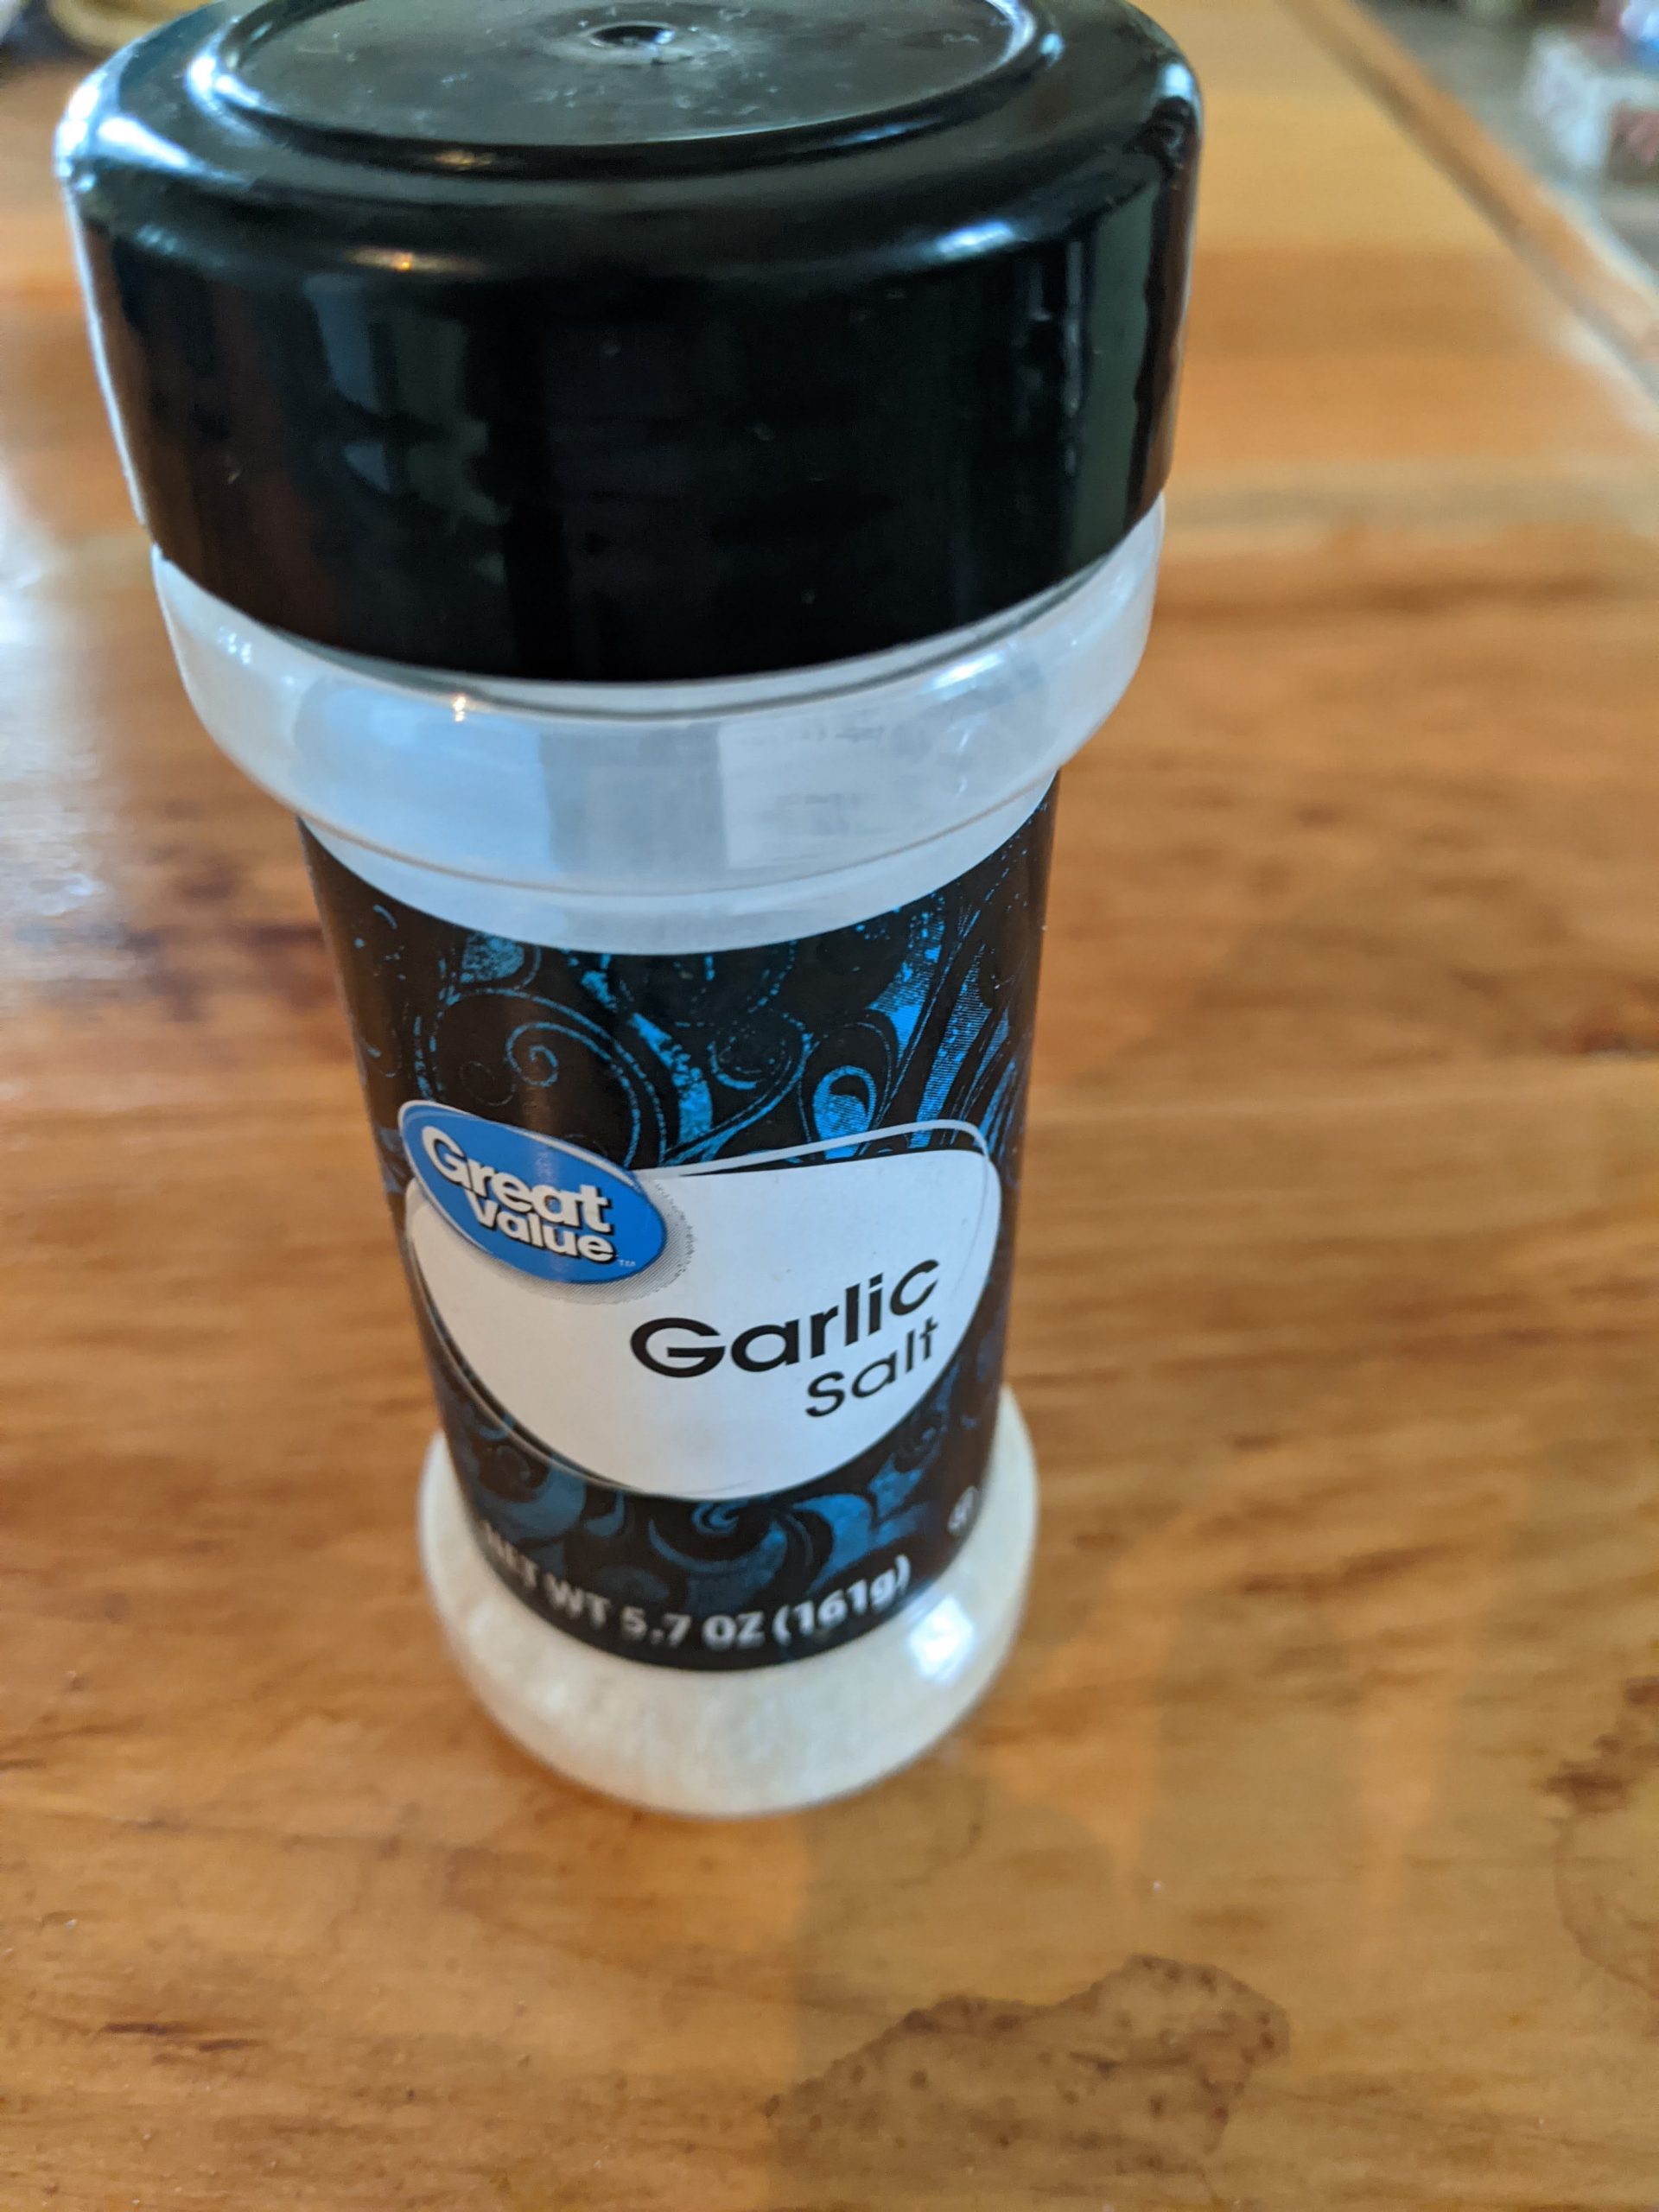 Garlic salt